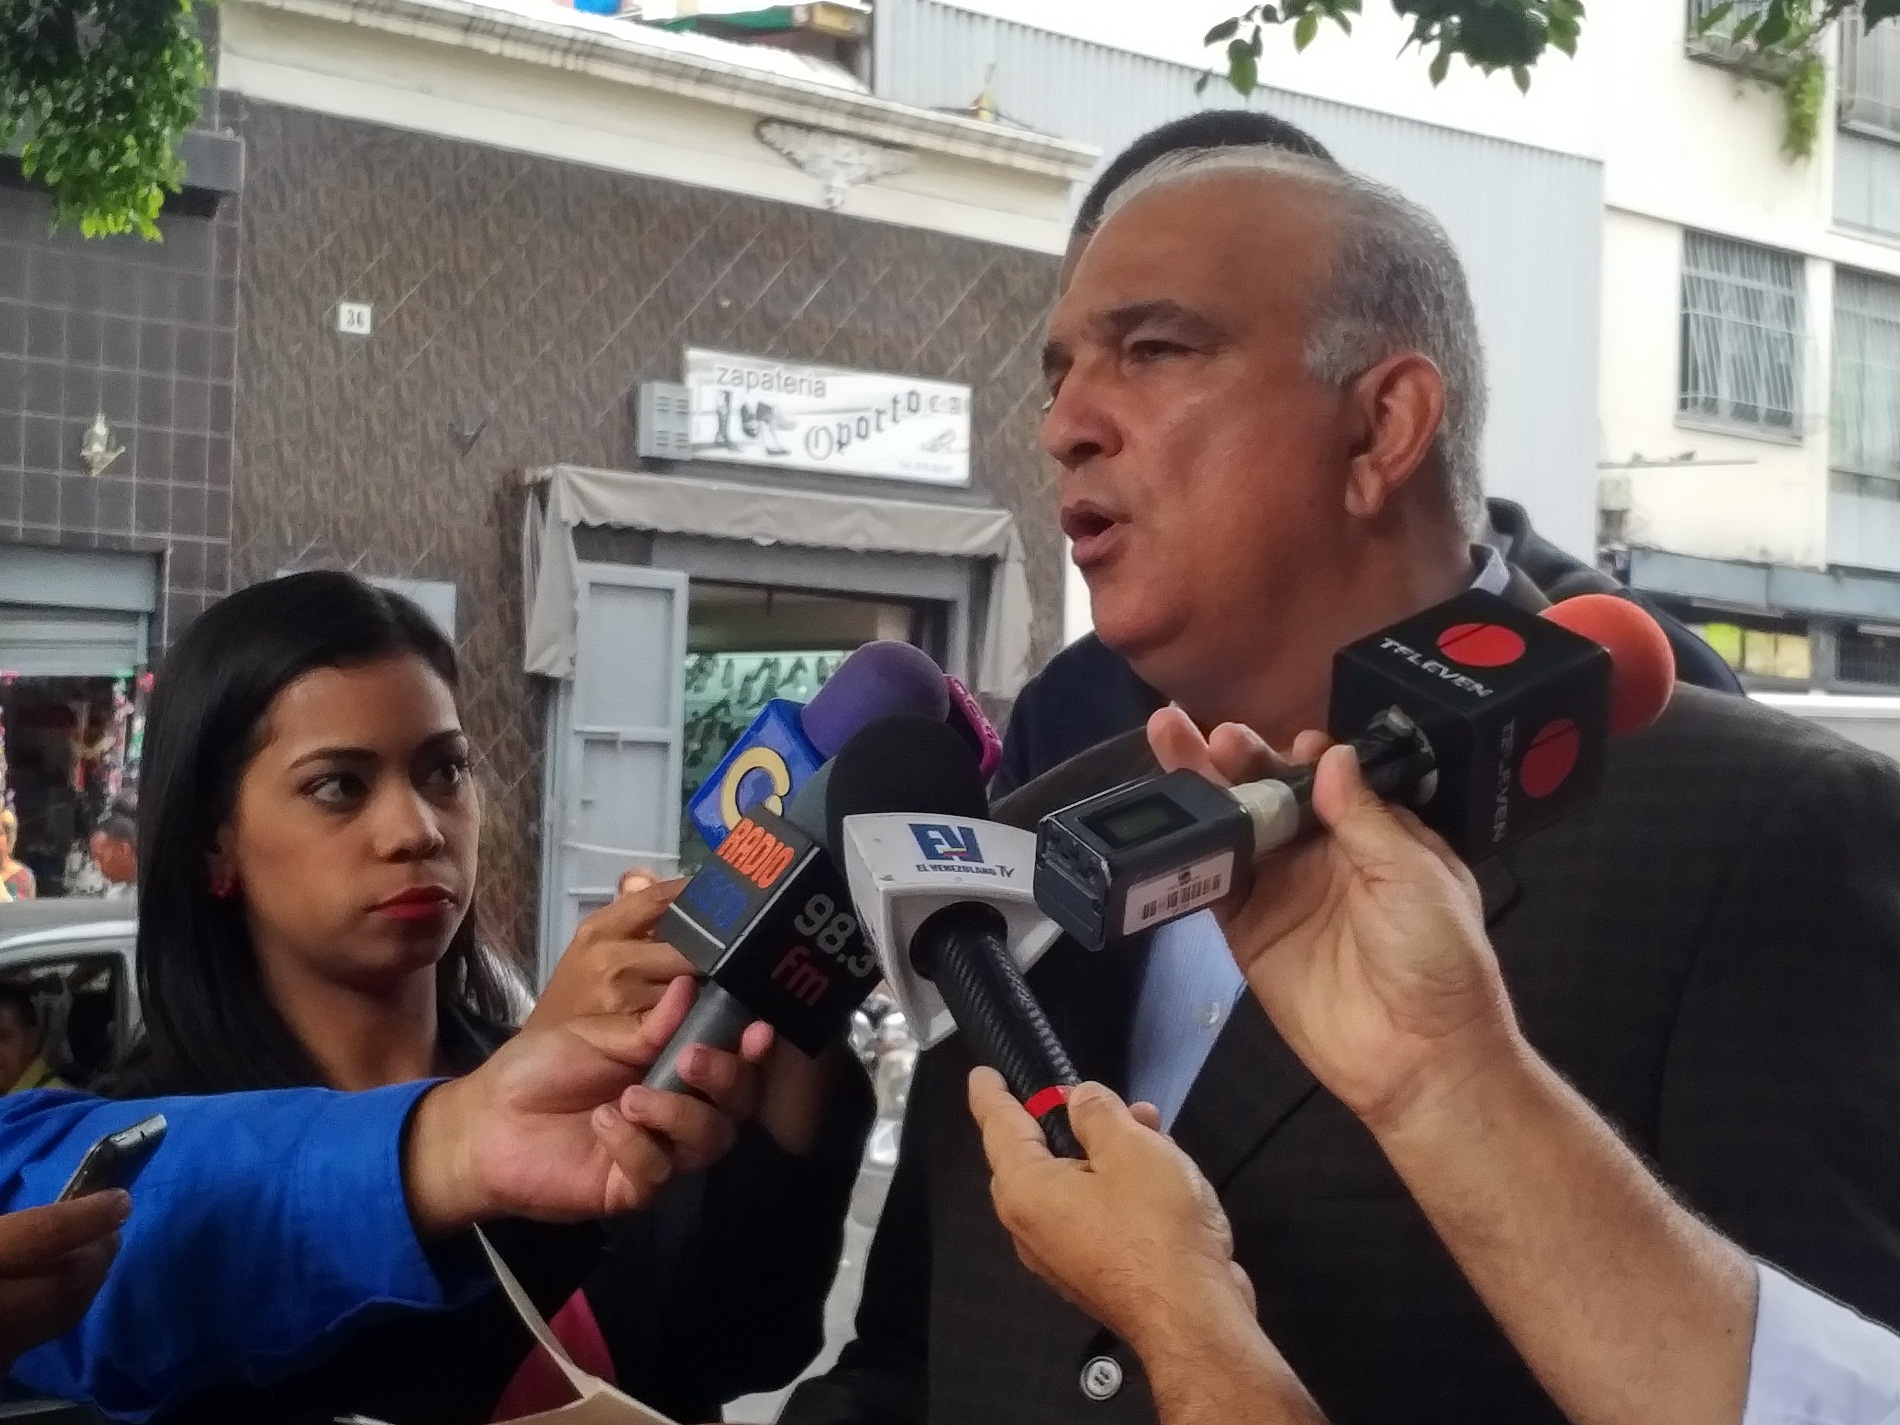 ¡A pesar de colectivos! Raúl Yusef denunció a Rangel Gómez  y Villegas en Fiscalía por instigación al odio